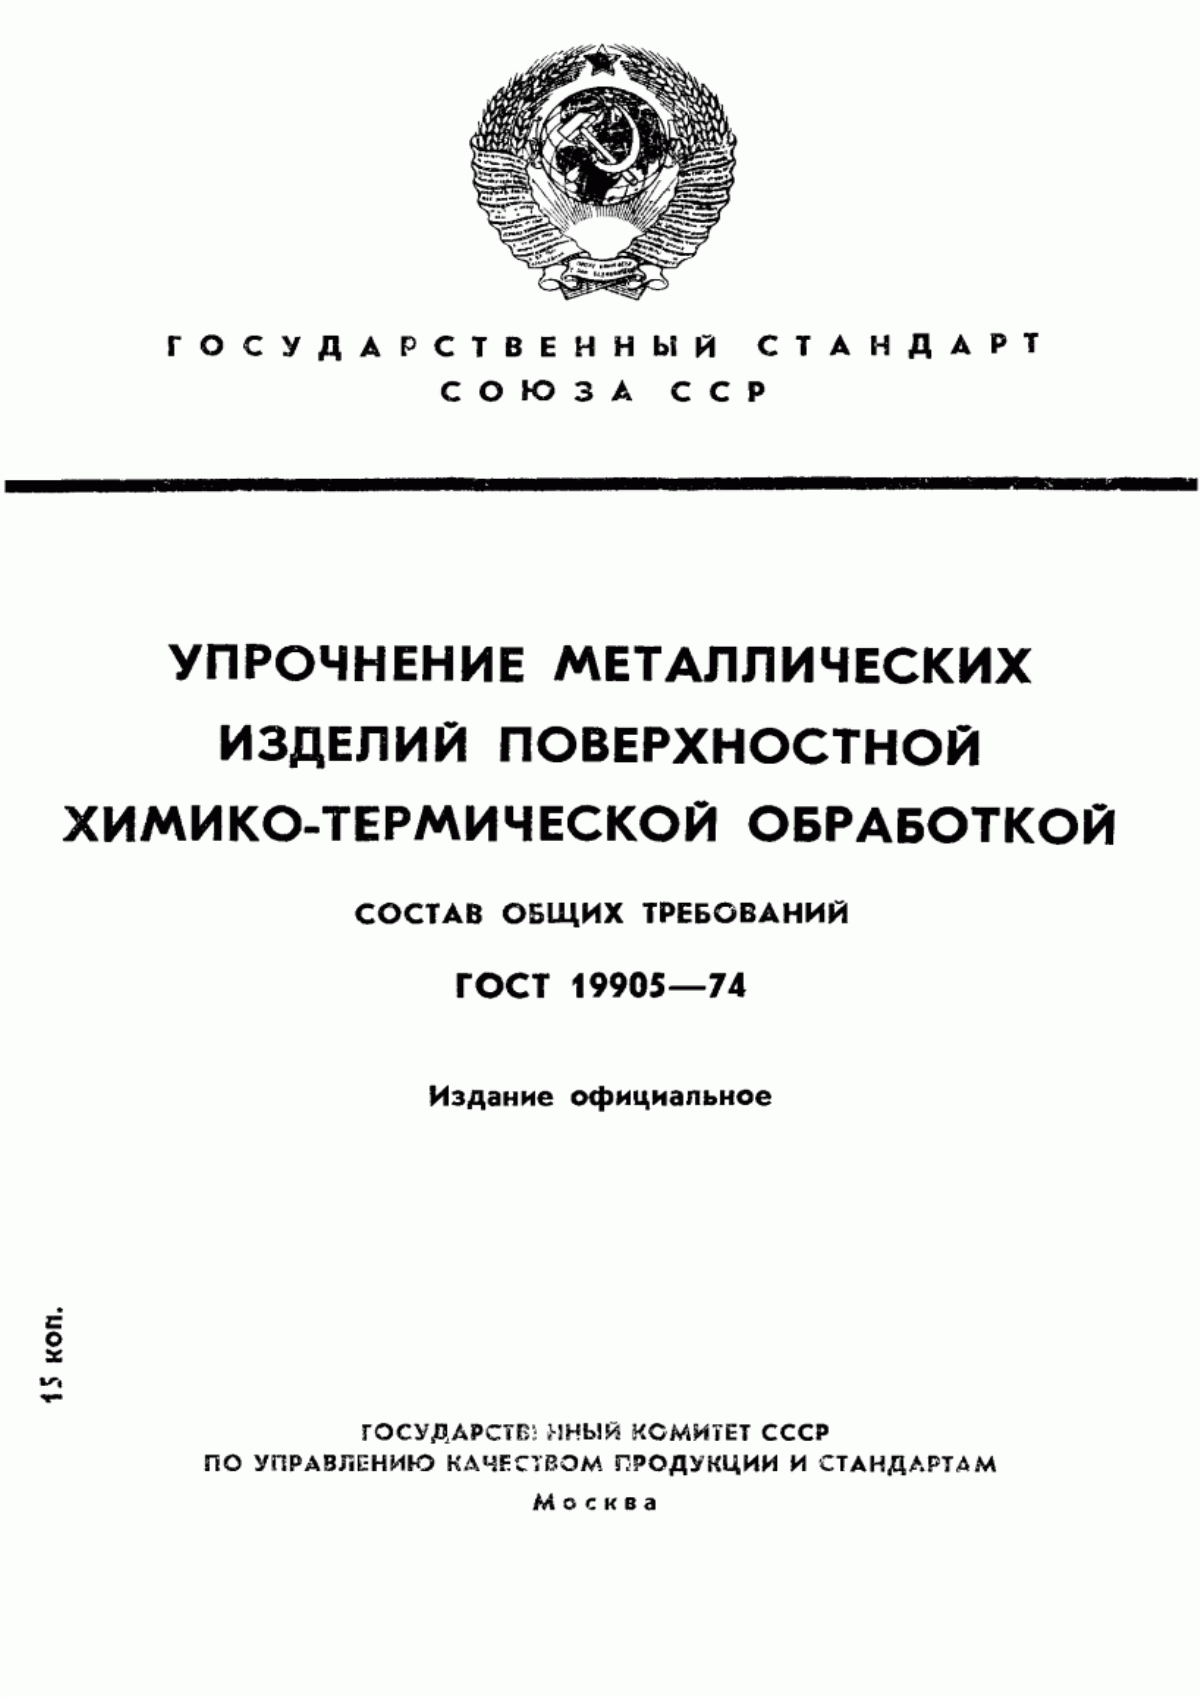 ГОСТ 19905-74 Упрочнение металлических изделий поверхностной химико-термической обработкой. Состав общих требований